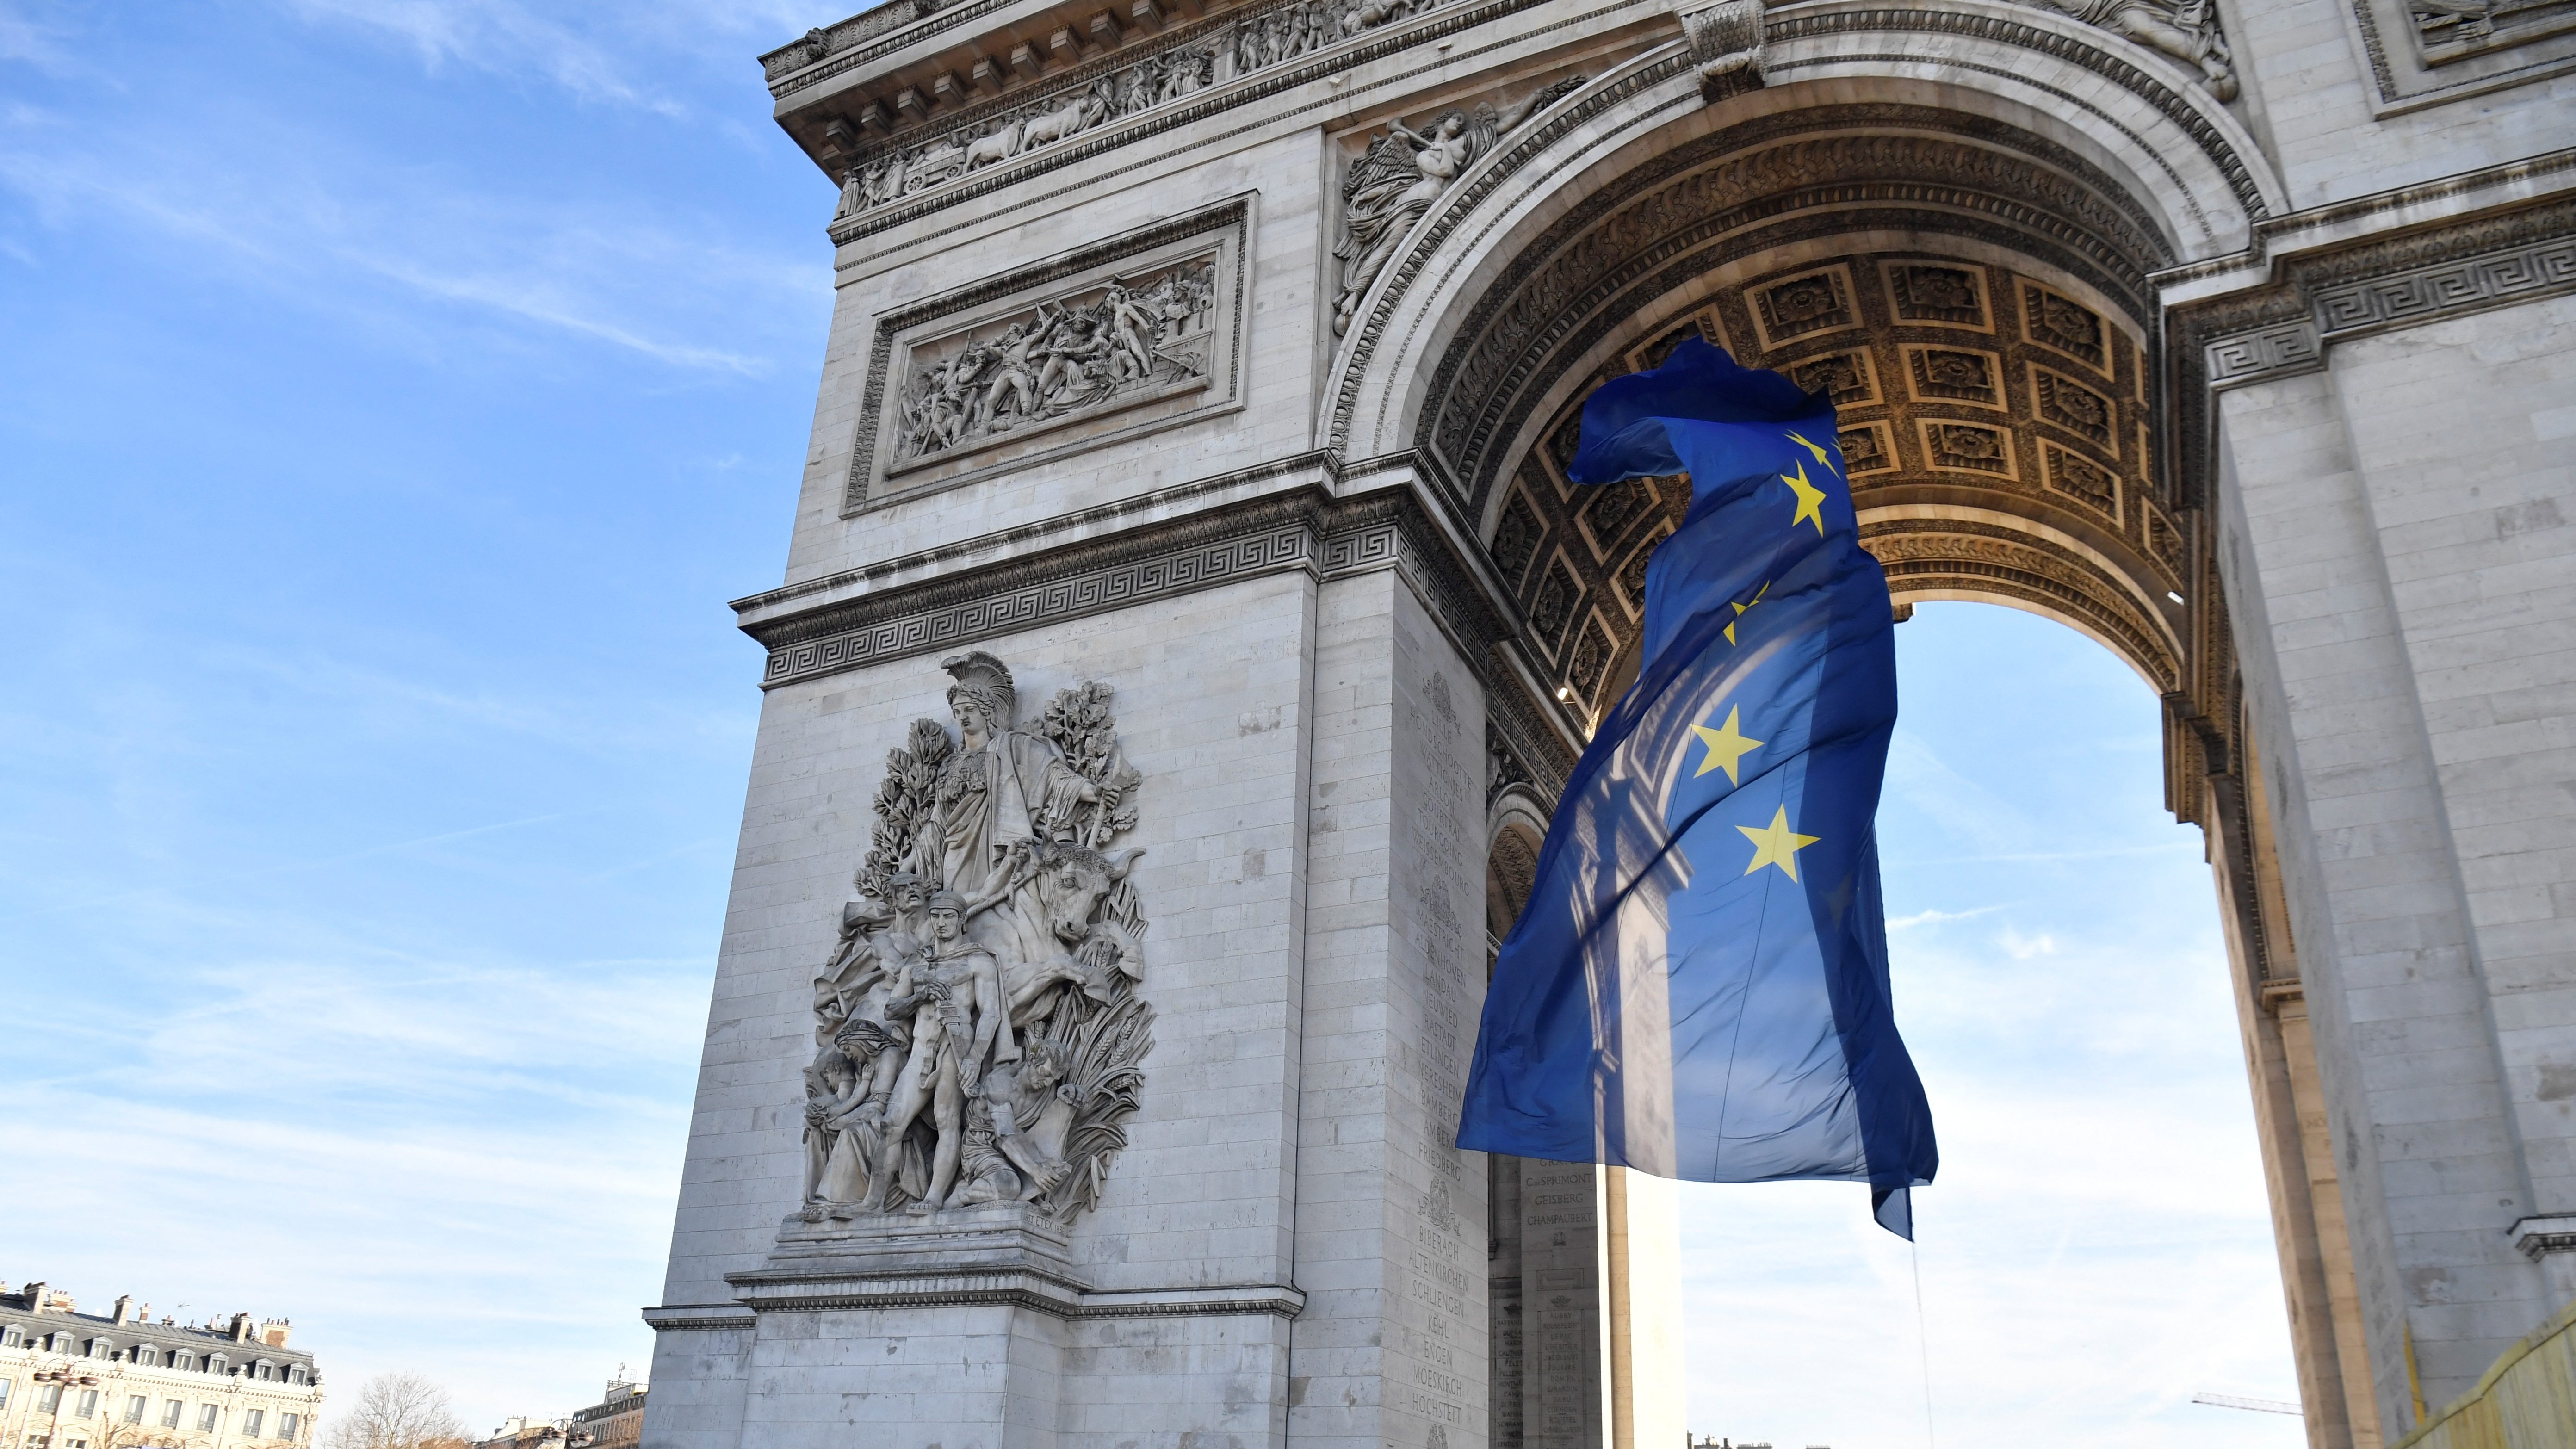 Kitűzték, majd azonnal le is vették az Európai Unió zászlaját a párizsi diadalívről